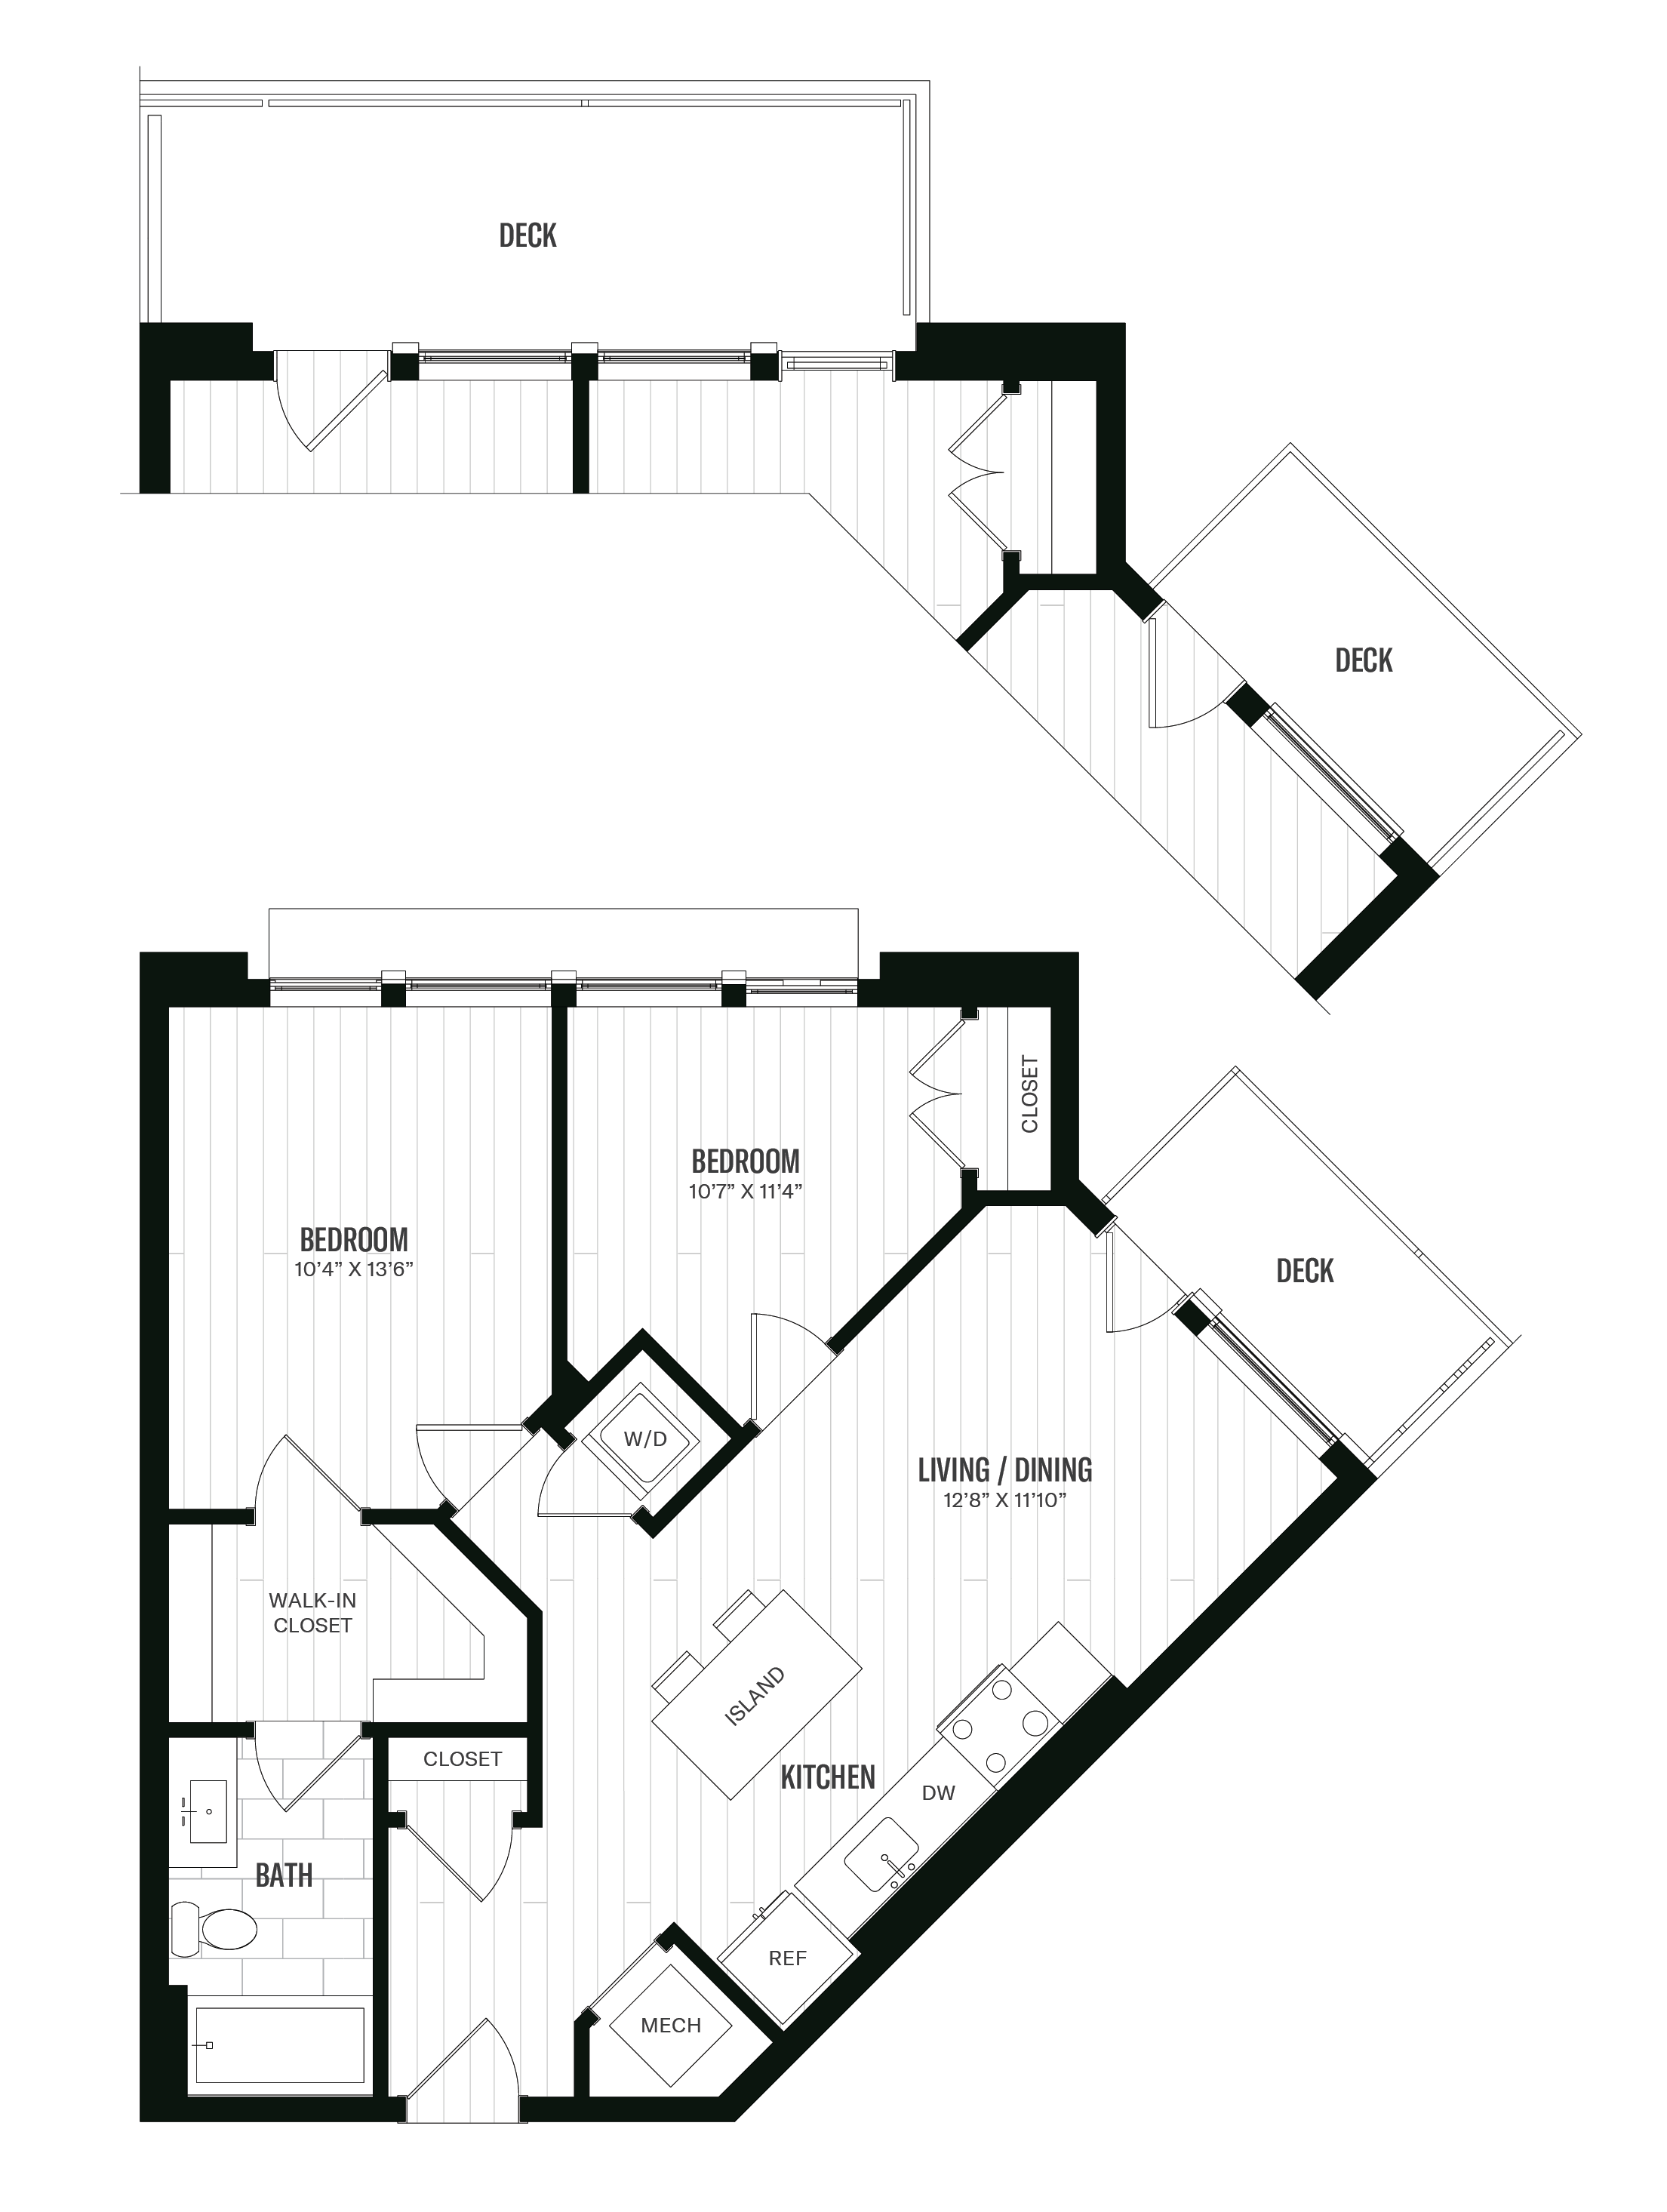 Floorplan image of unit 614